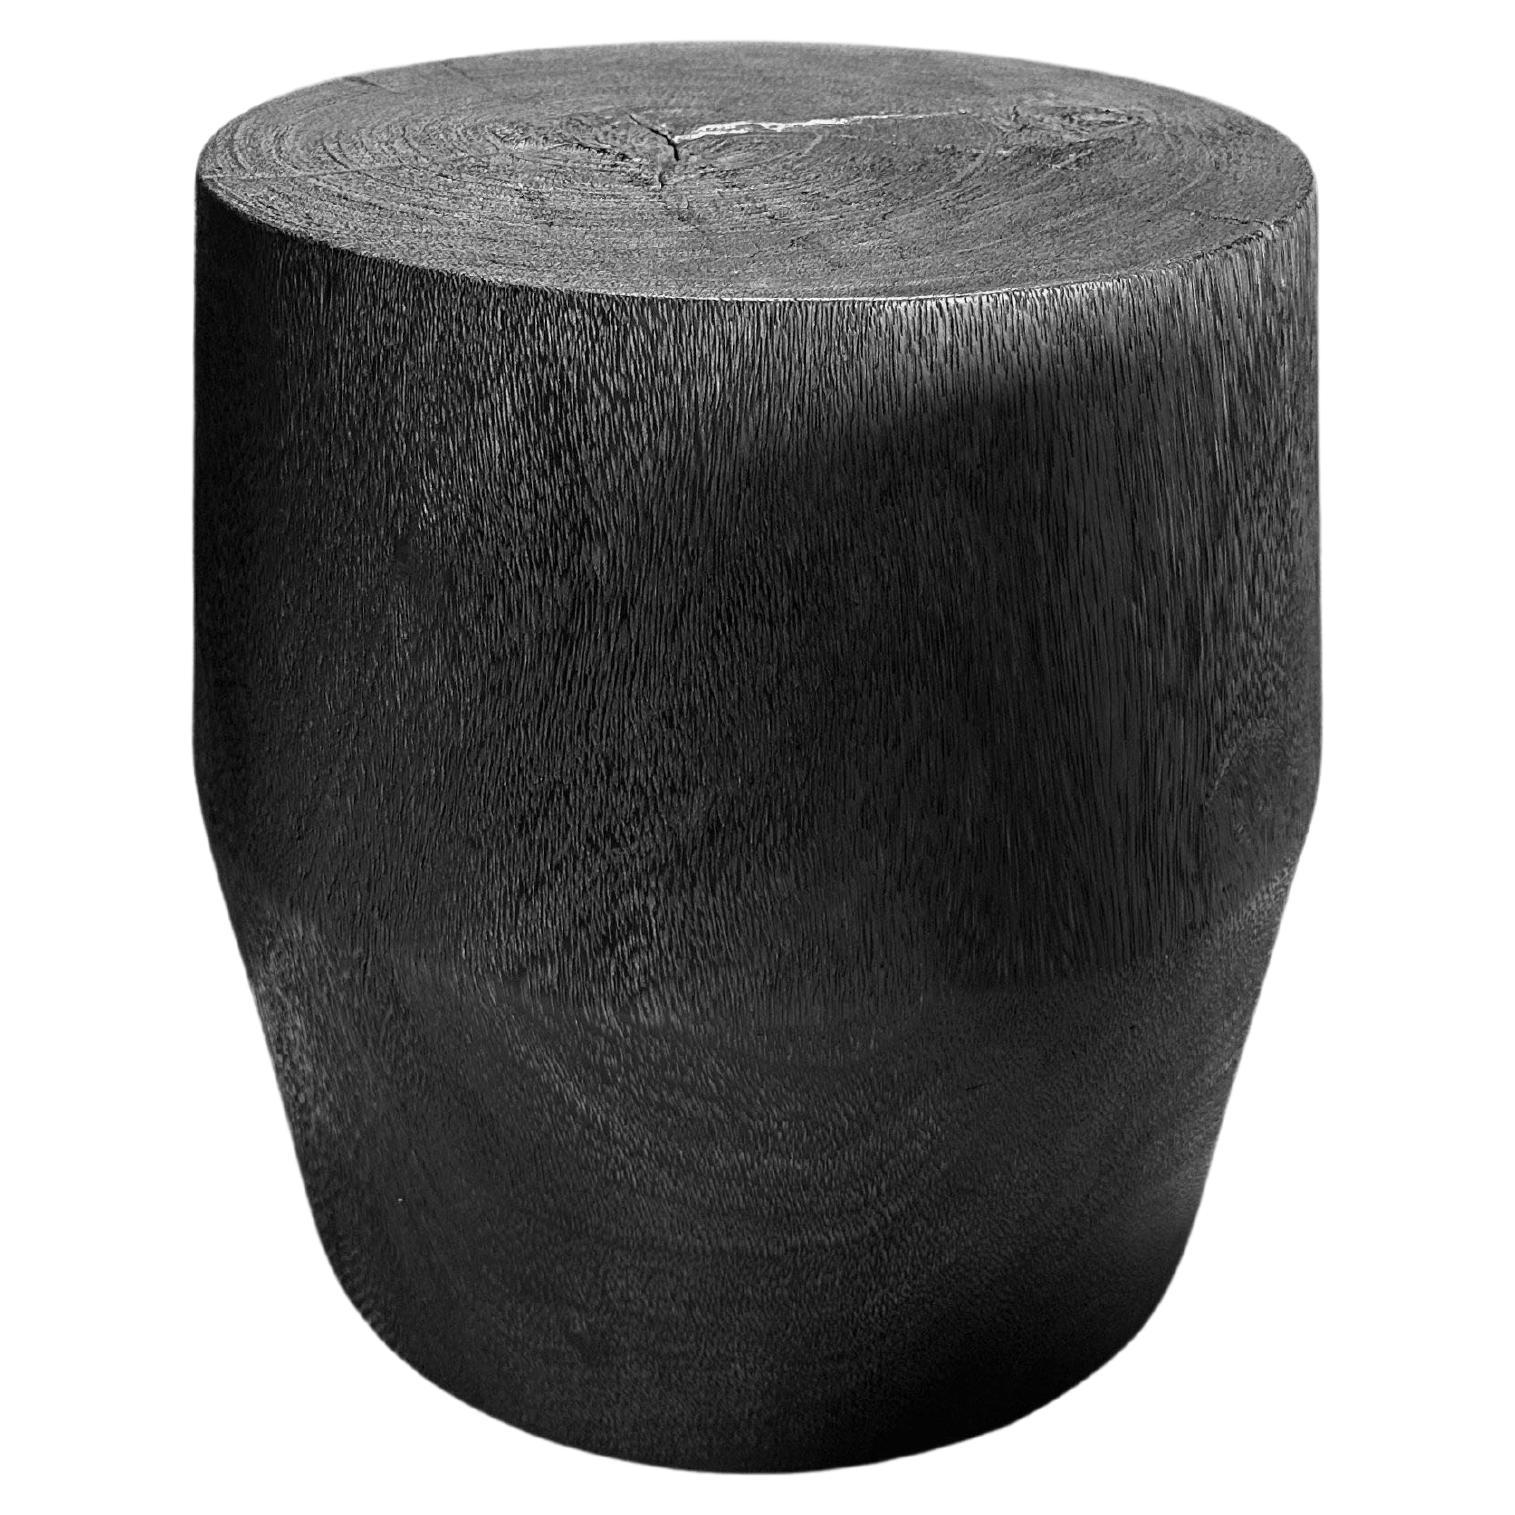 Runder Beistelltisch aus Mango-Holz, gebrannte Oberfläche, modern, organisch, modern